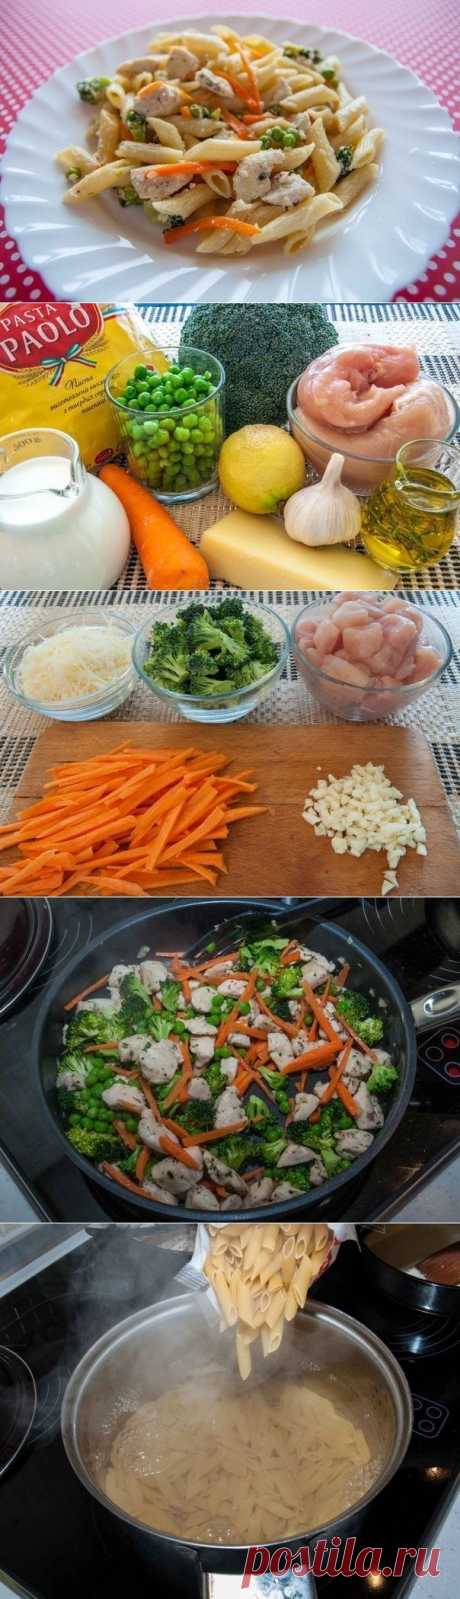 Как приготовить паста с курицей, овощами и сливочным соусом - рецепт, ингридиенты и фотографии